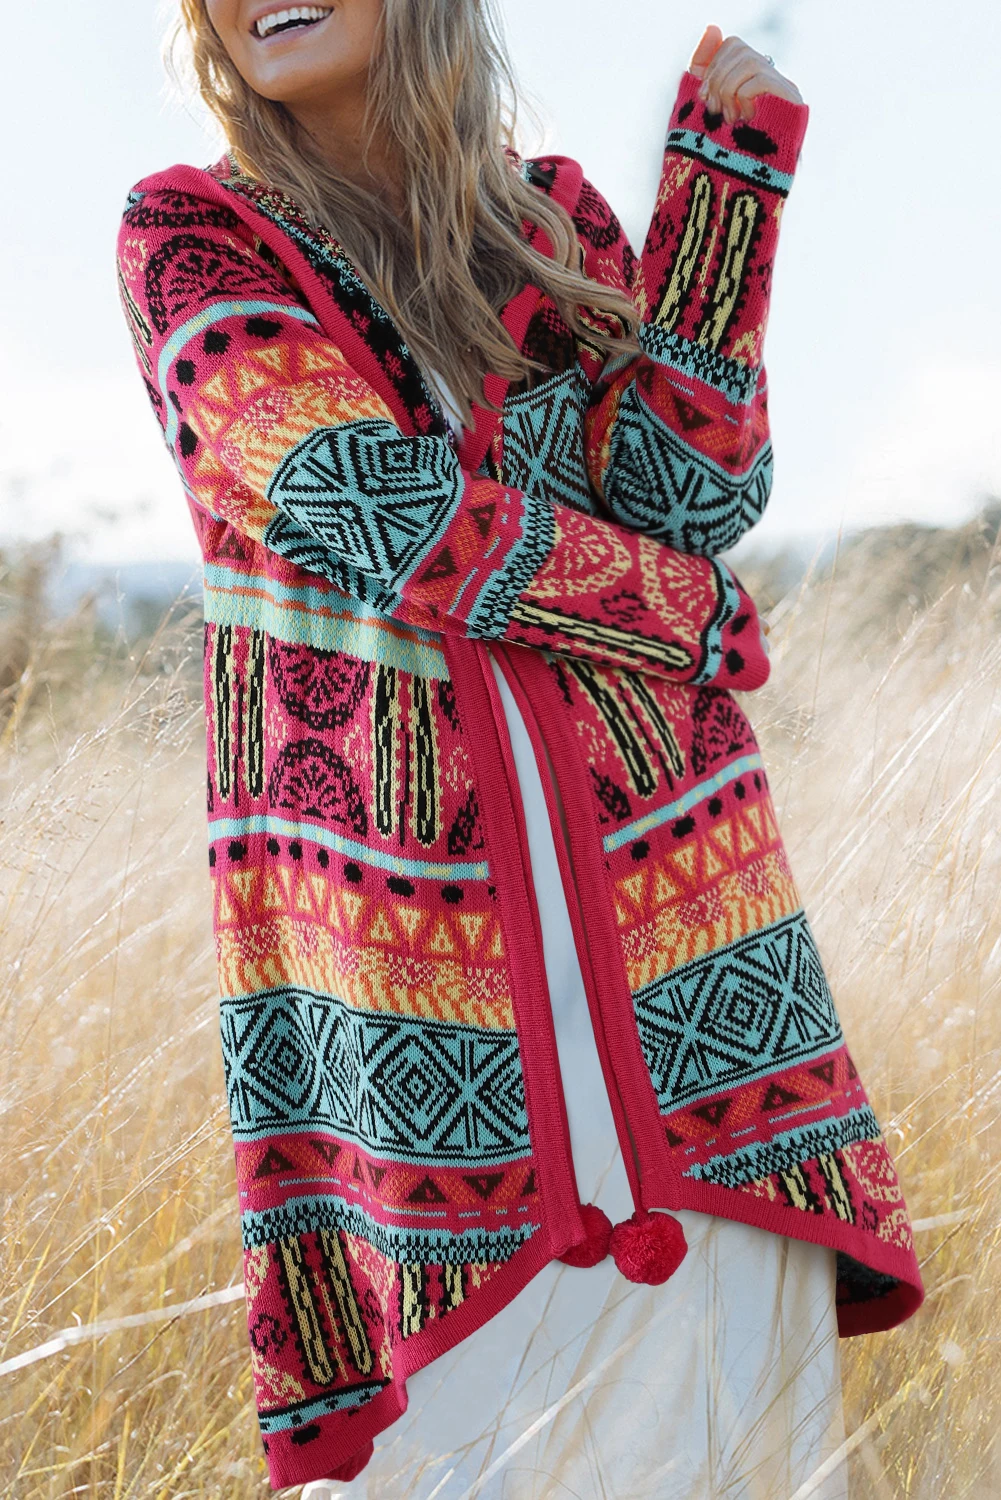 Dear-Lover Boho Aztec Knitted Pom Pom Tie Long Sweater Women Hooded Maxi Cardigan